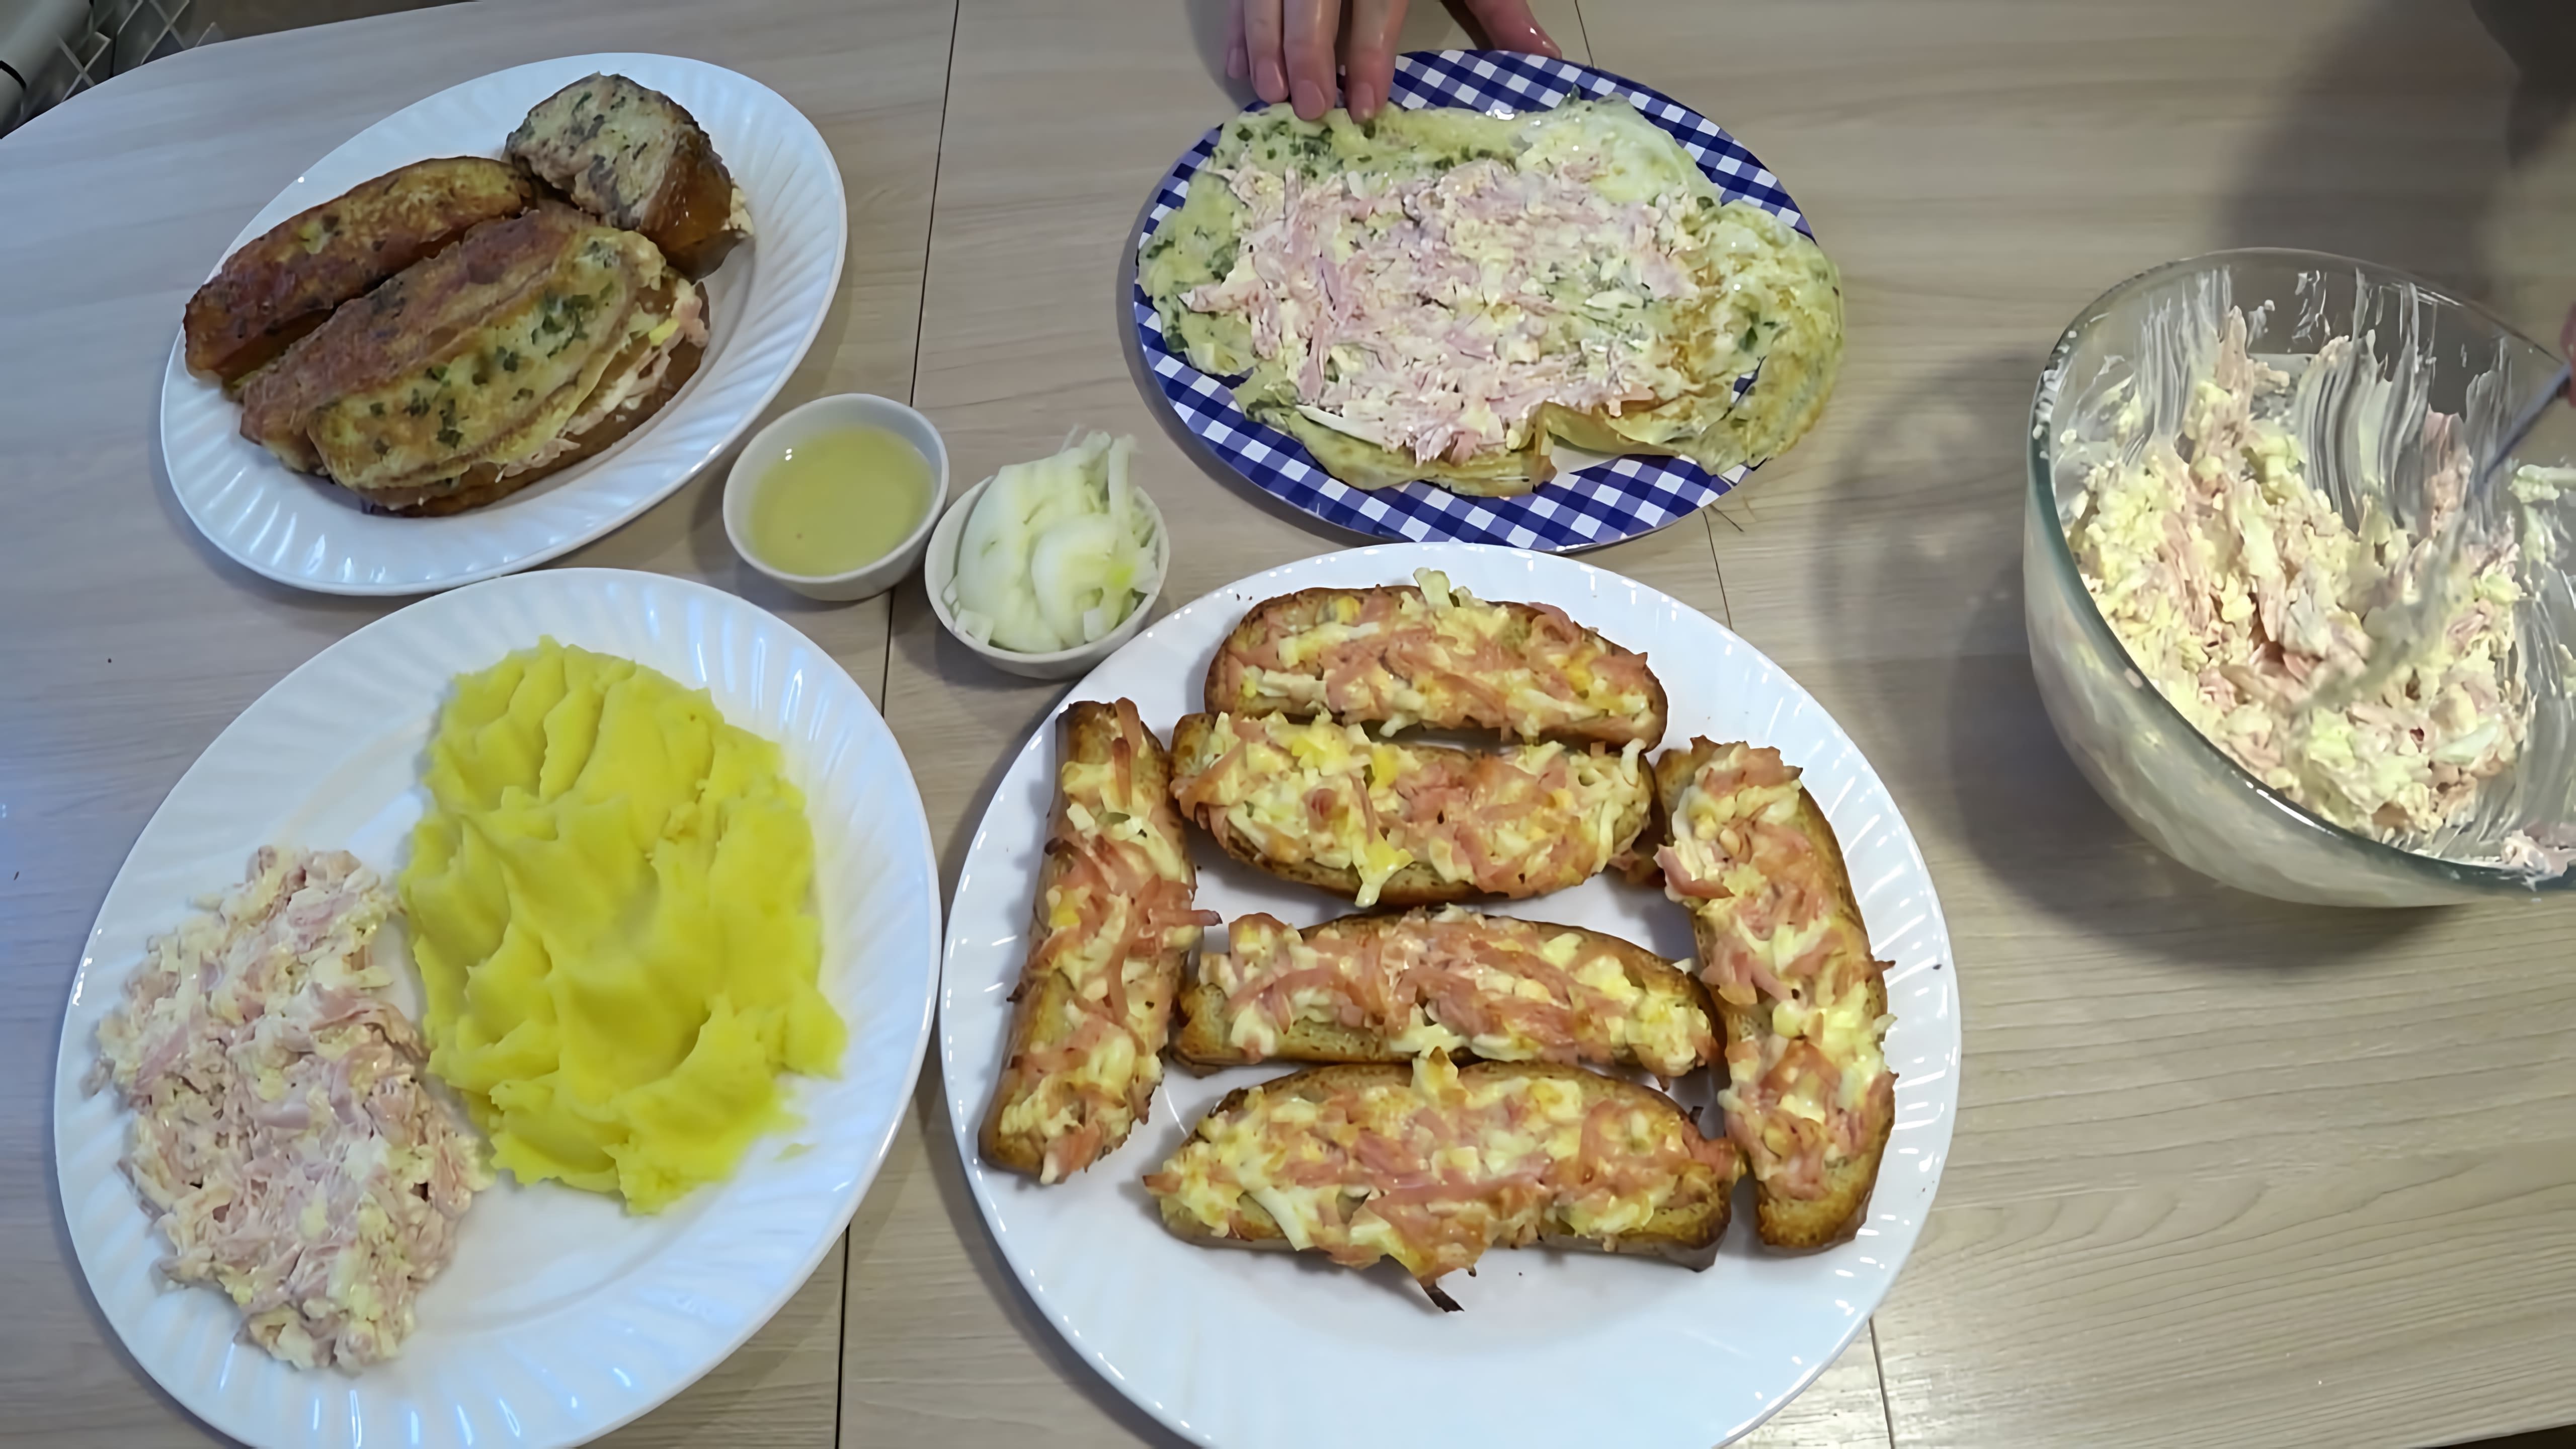 В этом видео показано, как приготовить четыре блюда из колбасы и яиц: салат, горячие бутерброды, картофельное пюре и блины с начинкой